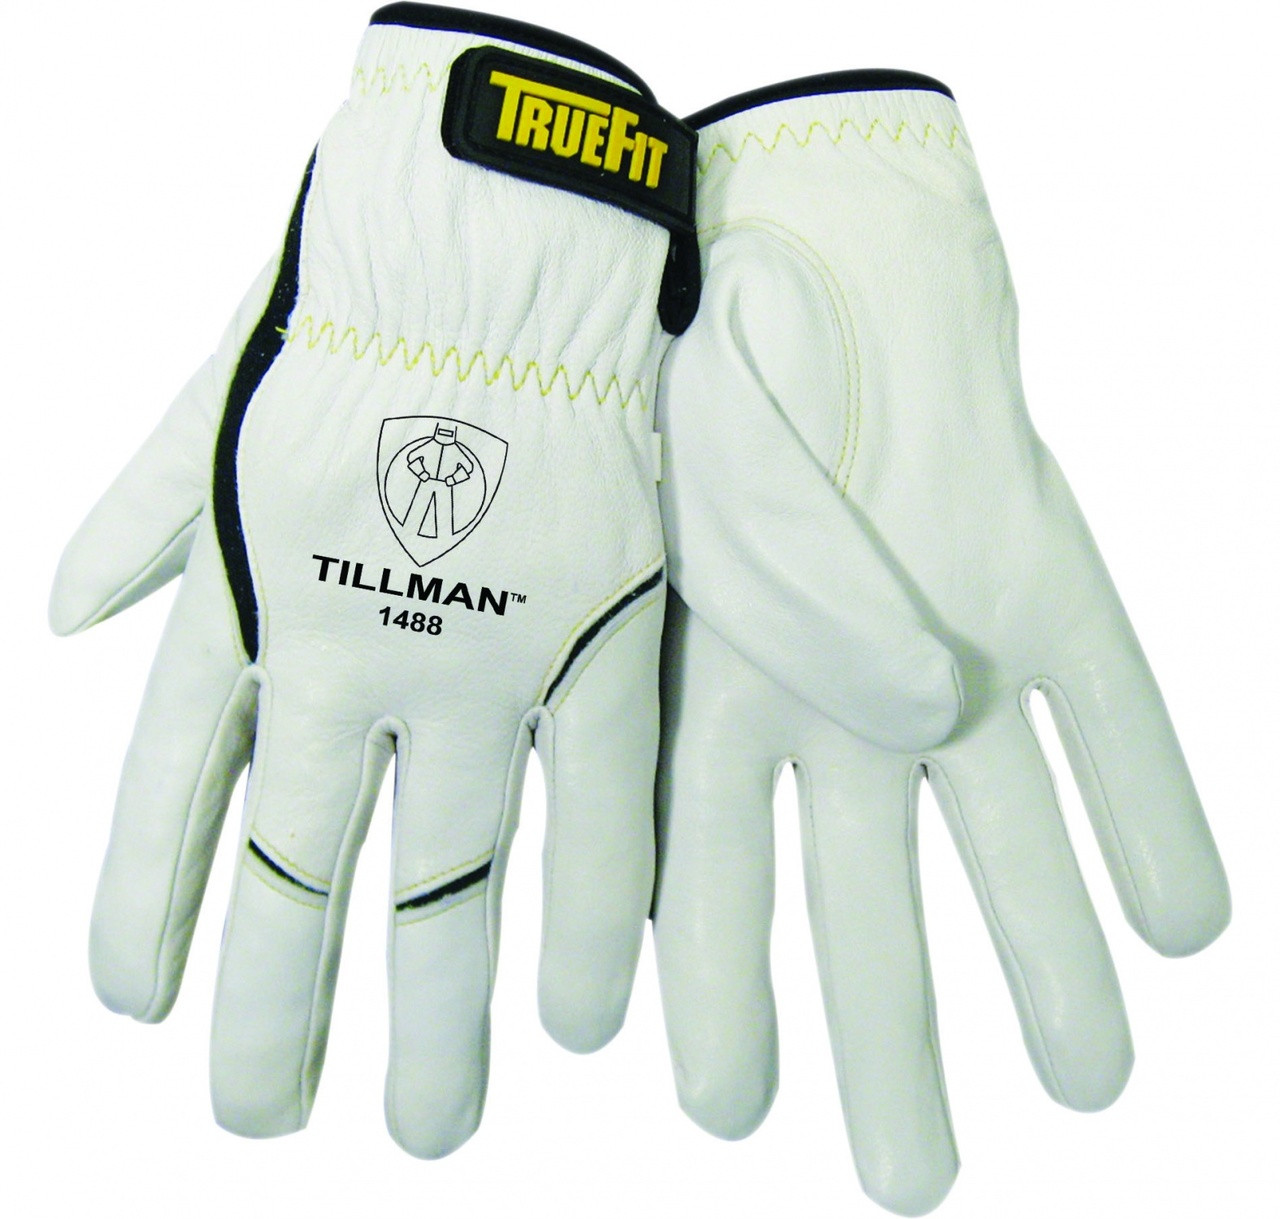 Tillman 1488 Truefit Tig Welding Gloves Netwelder